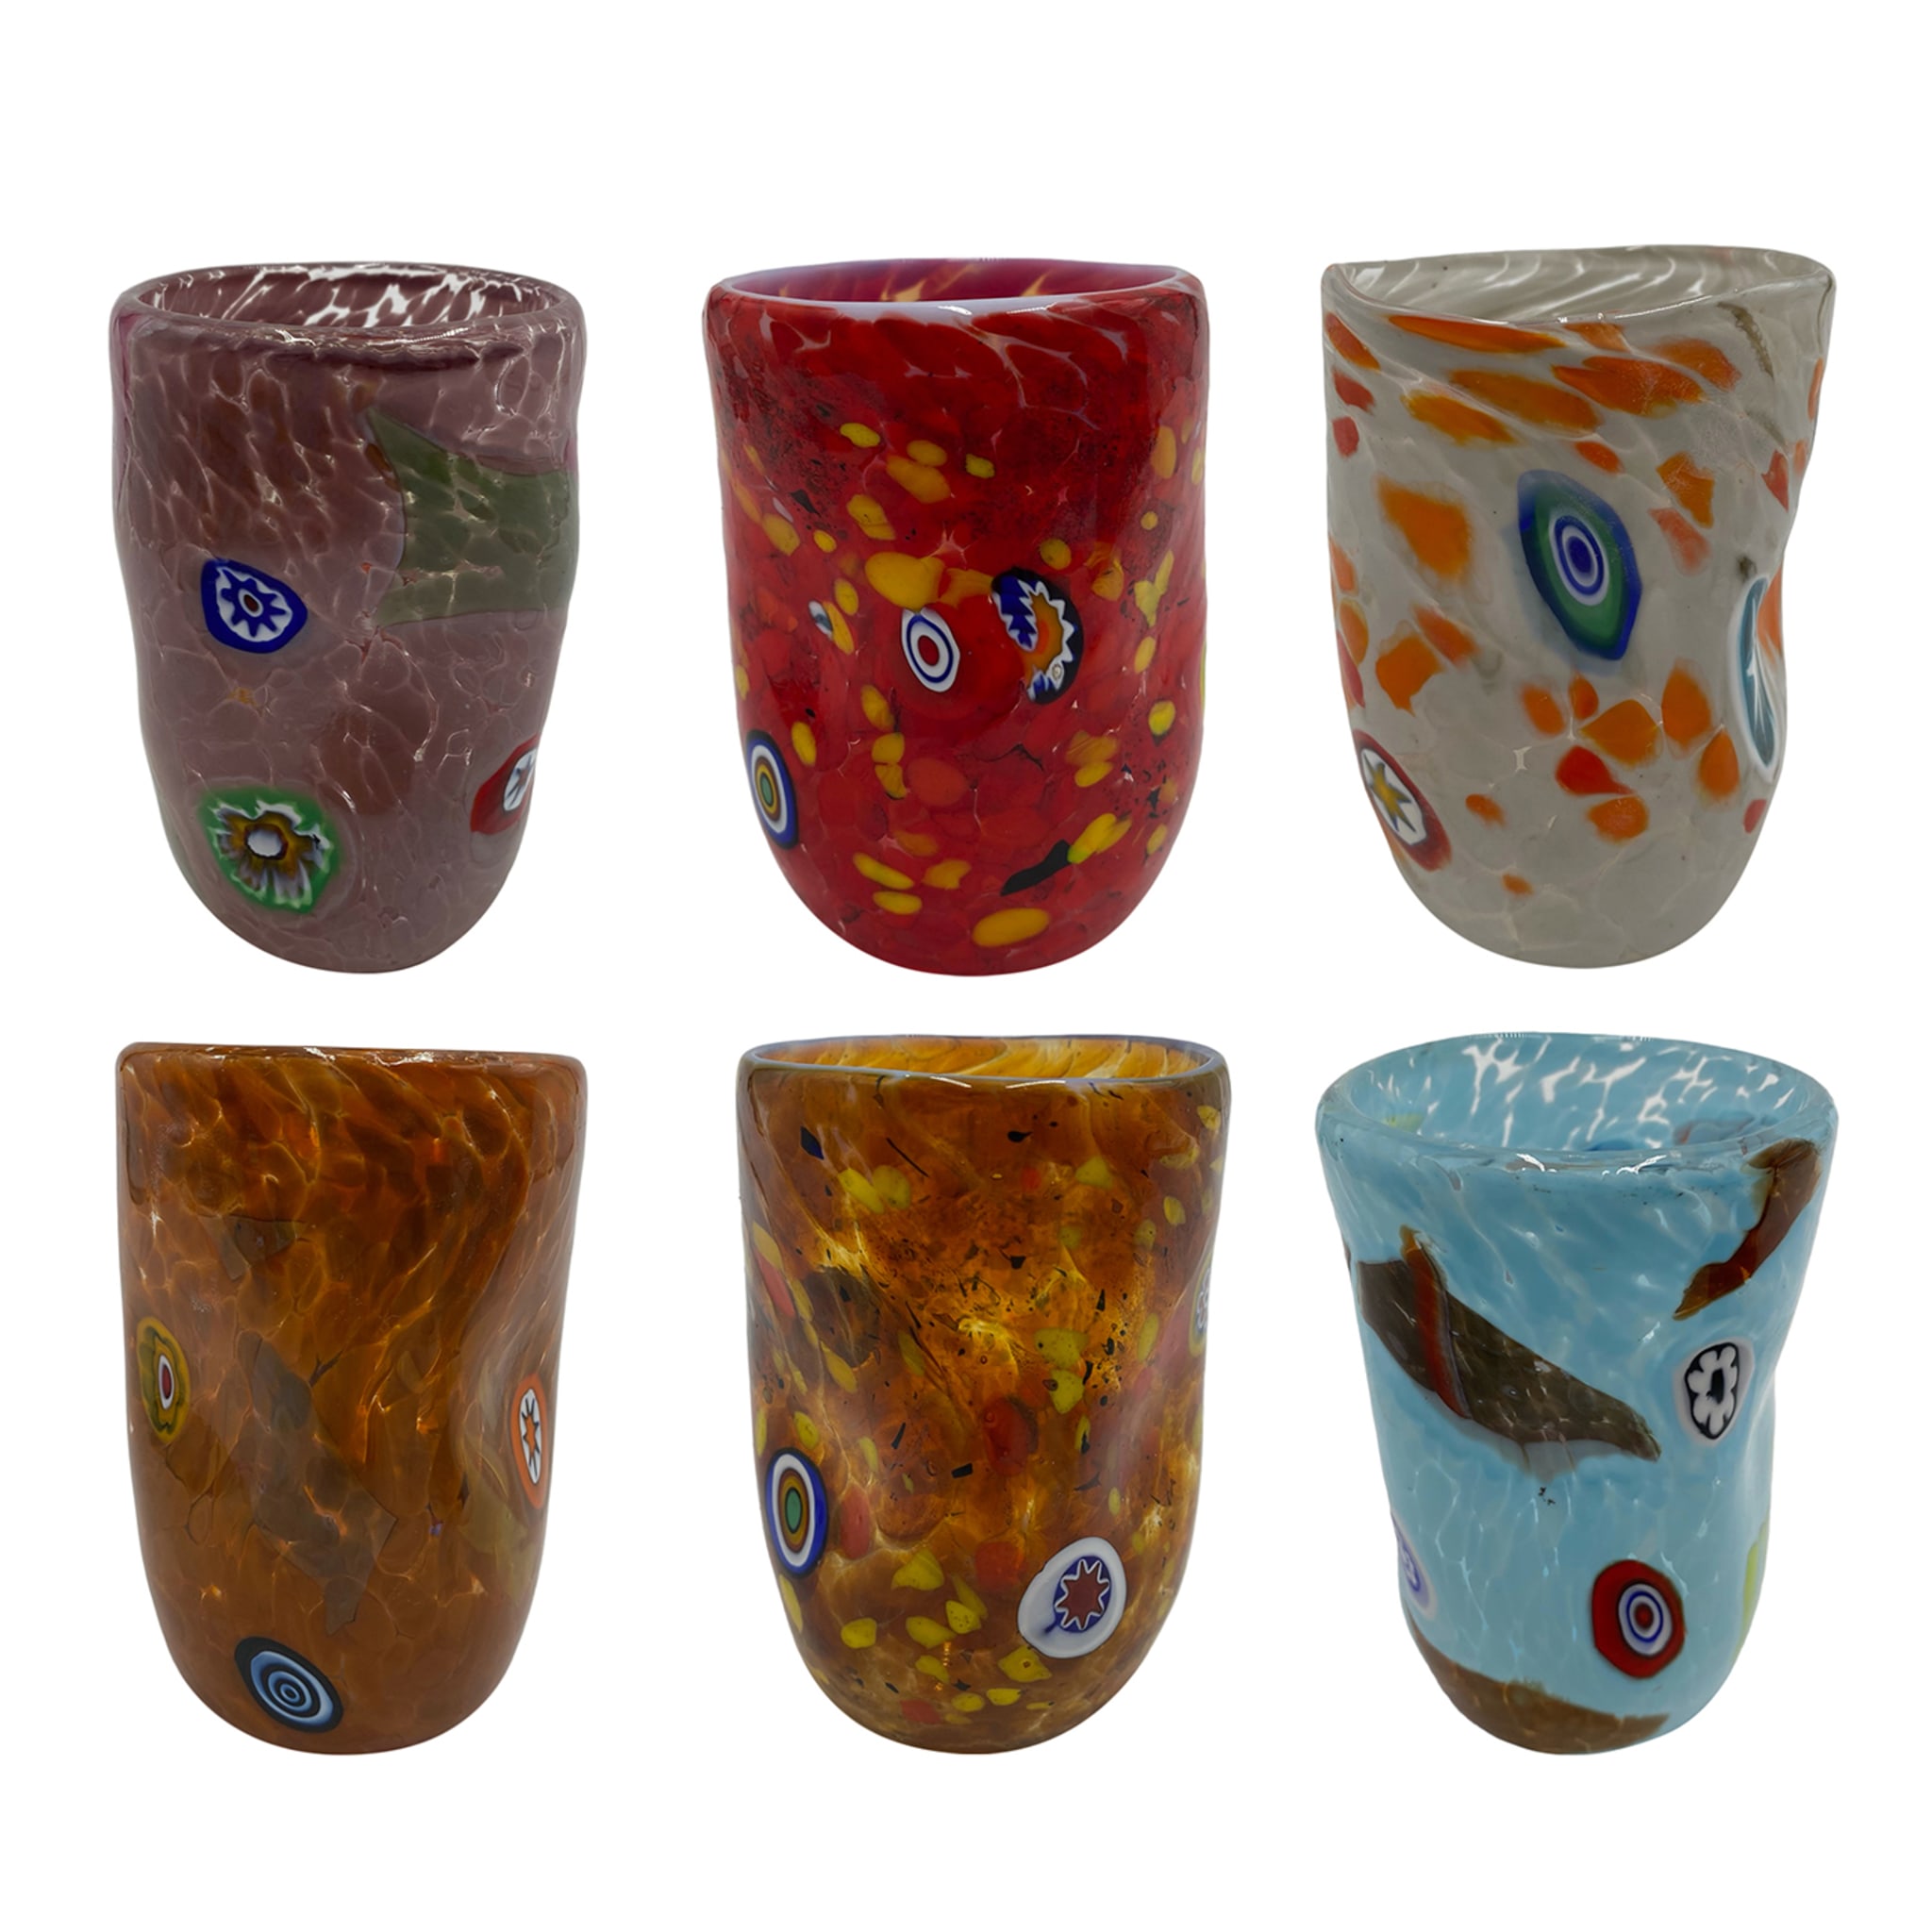 Juego policromado de 6 vasos decorados con Murrina - Vista principal